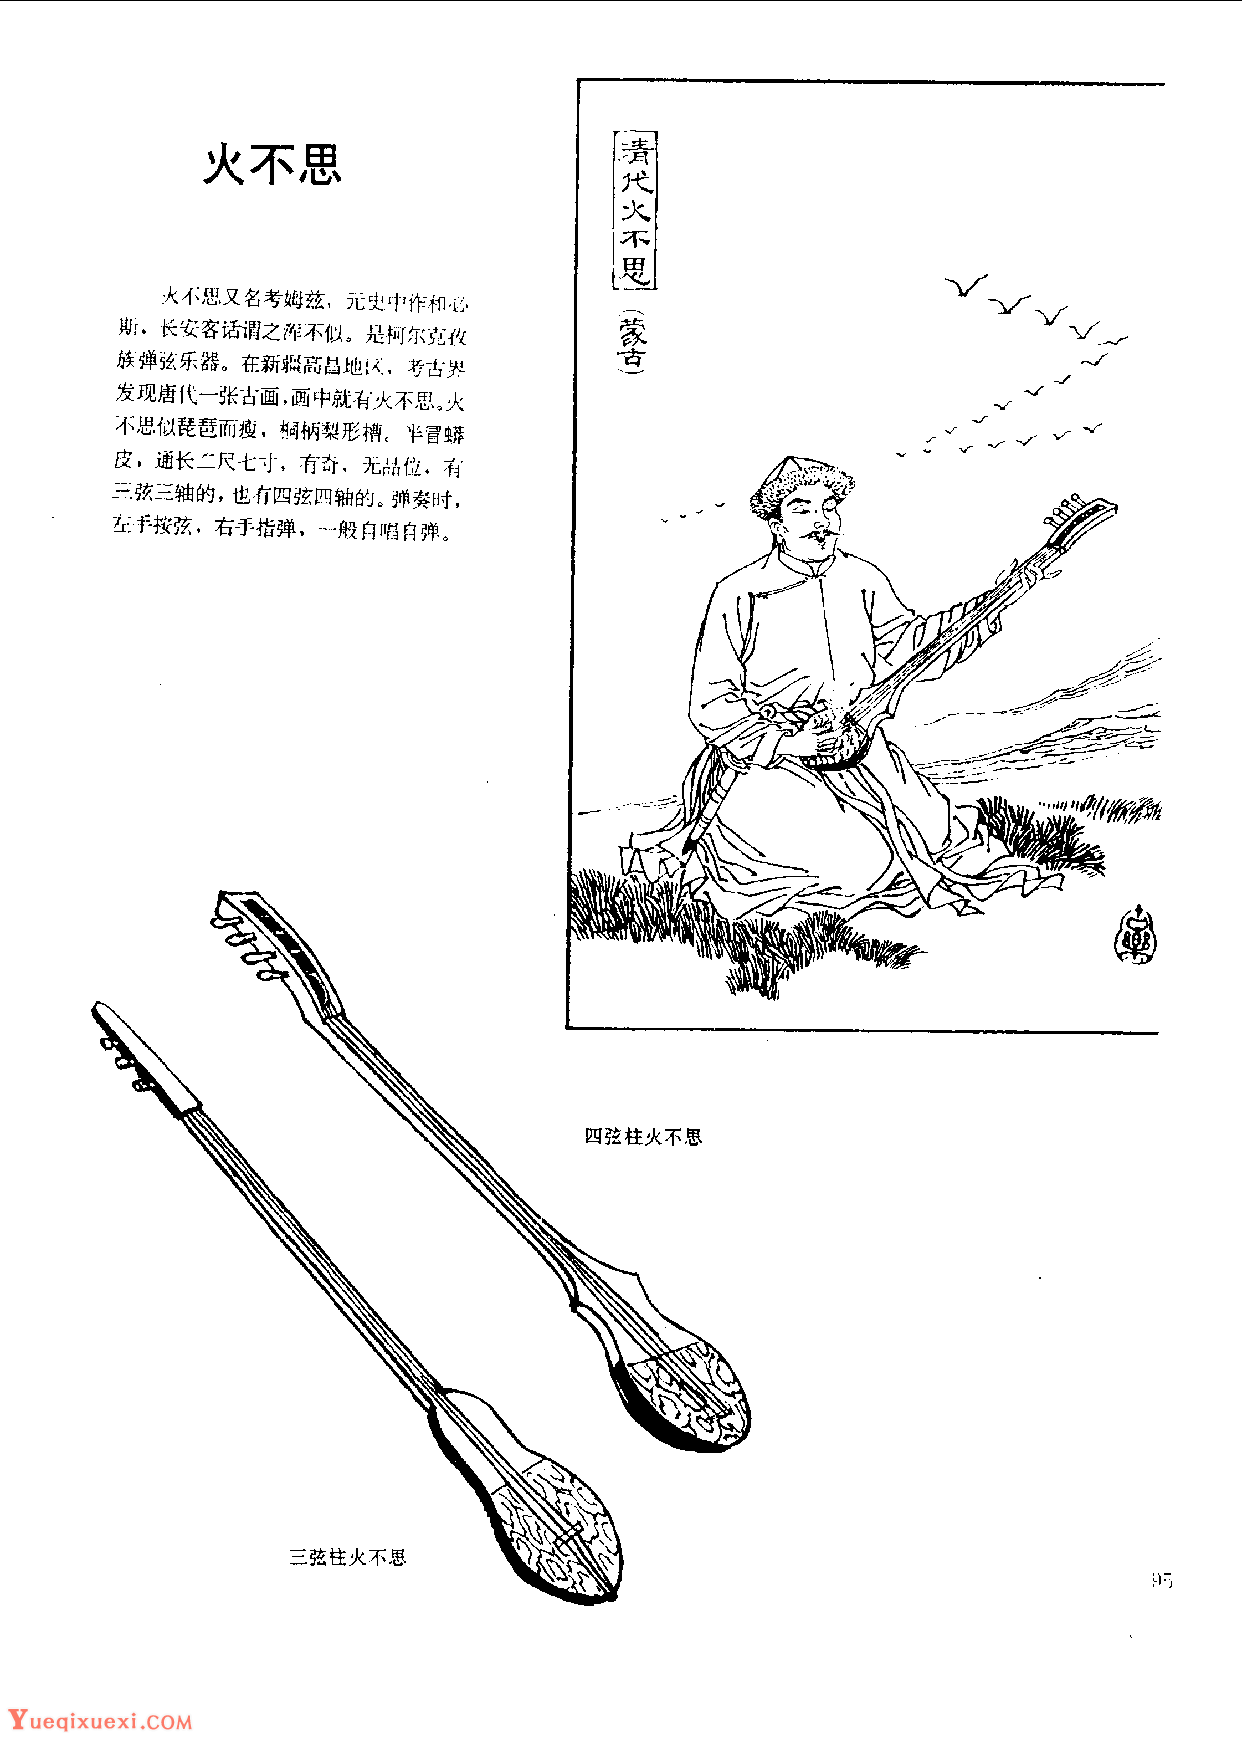 中国古代乐器《火不思》